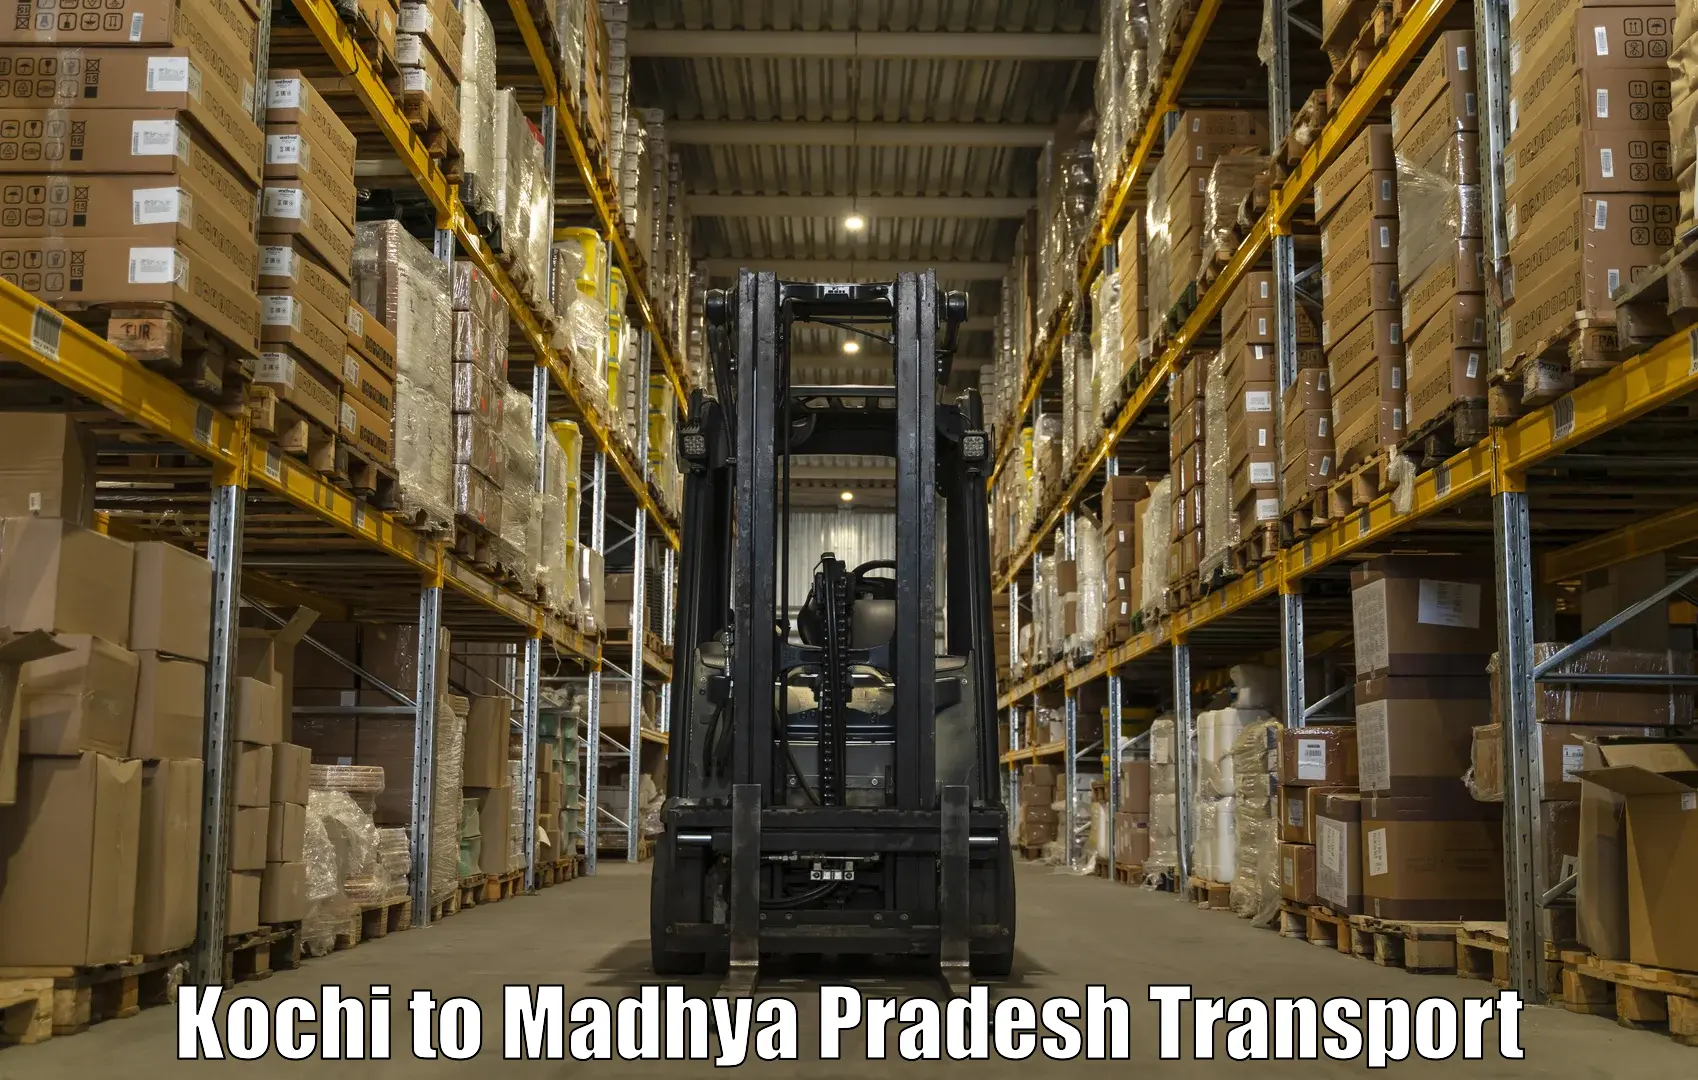 Lorry transport service Kochi to Nasrullaganj